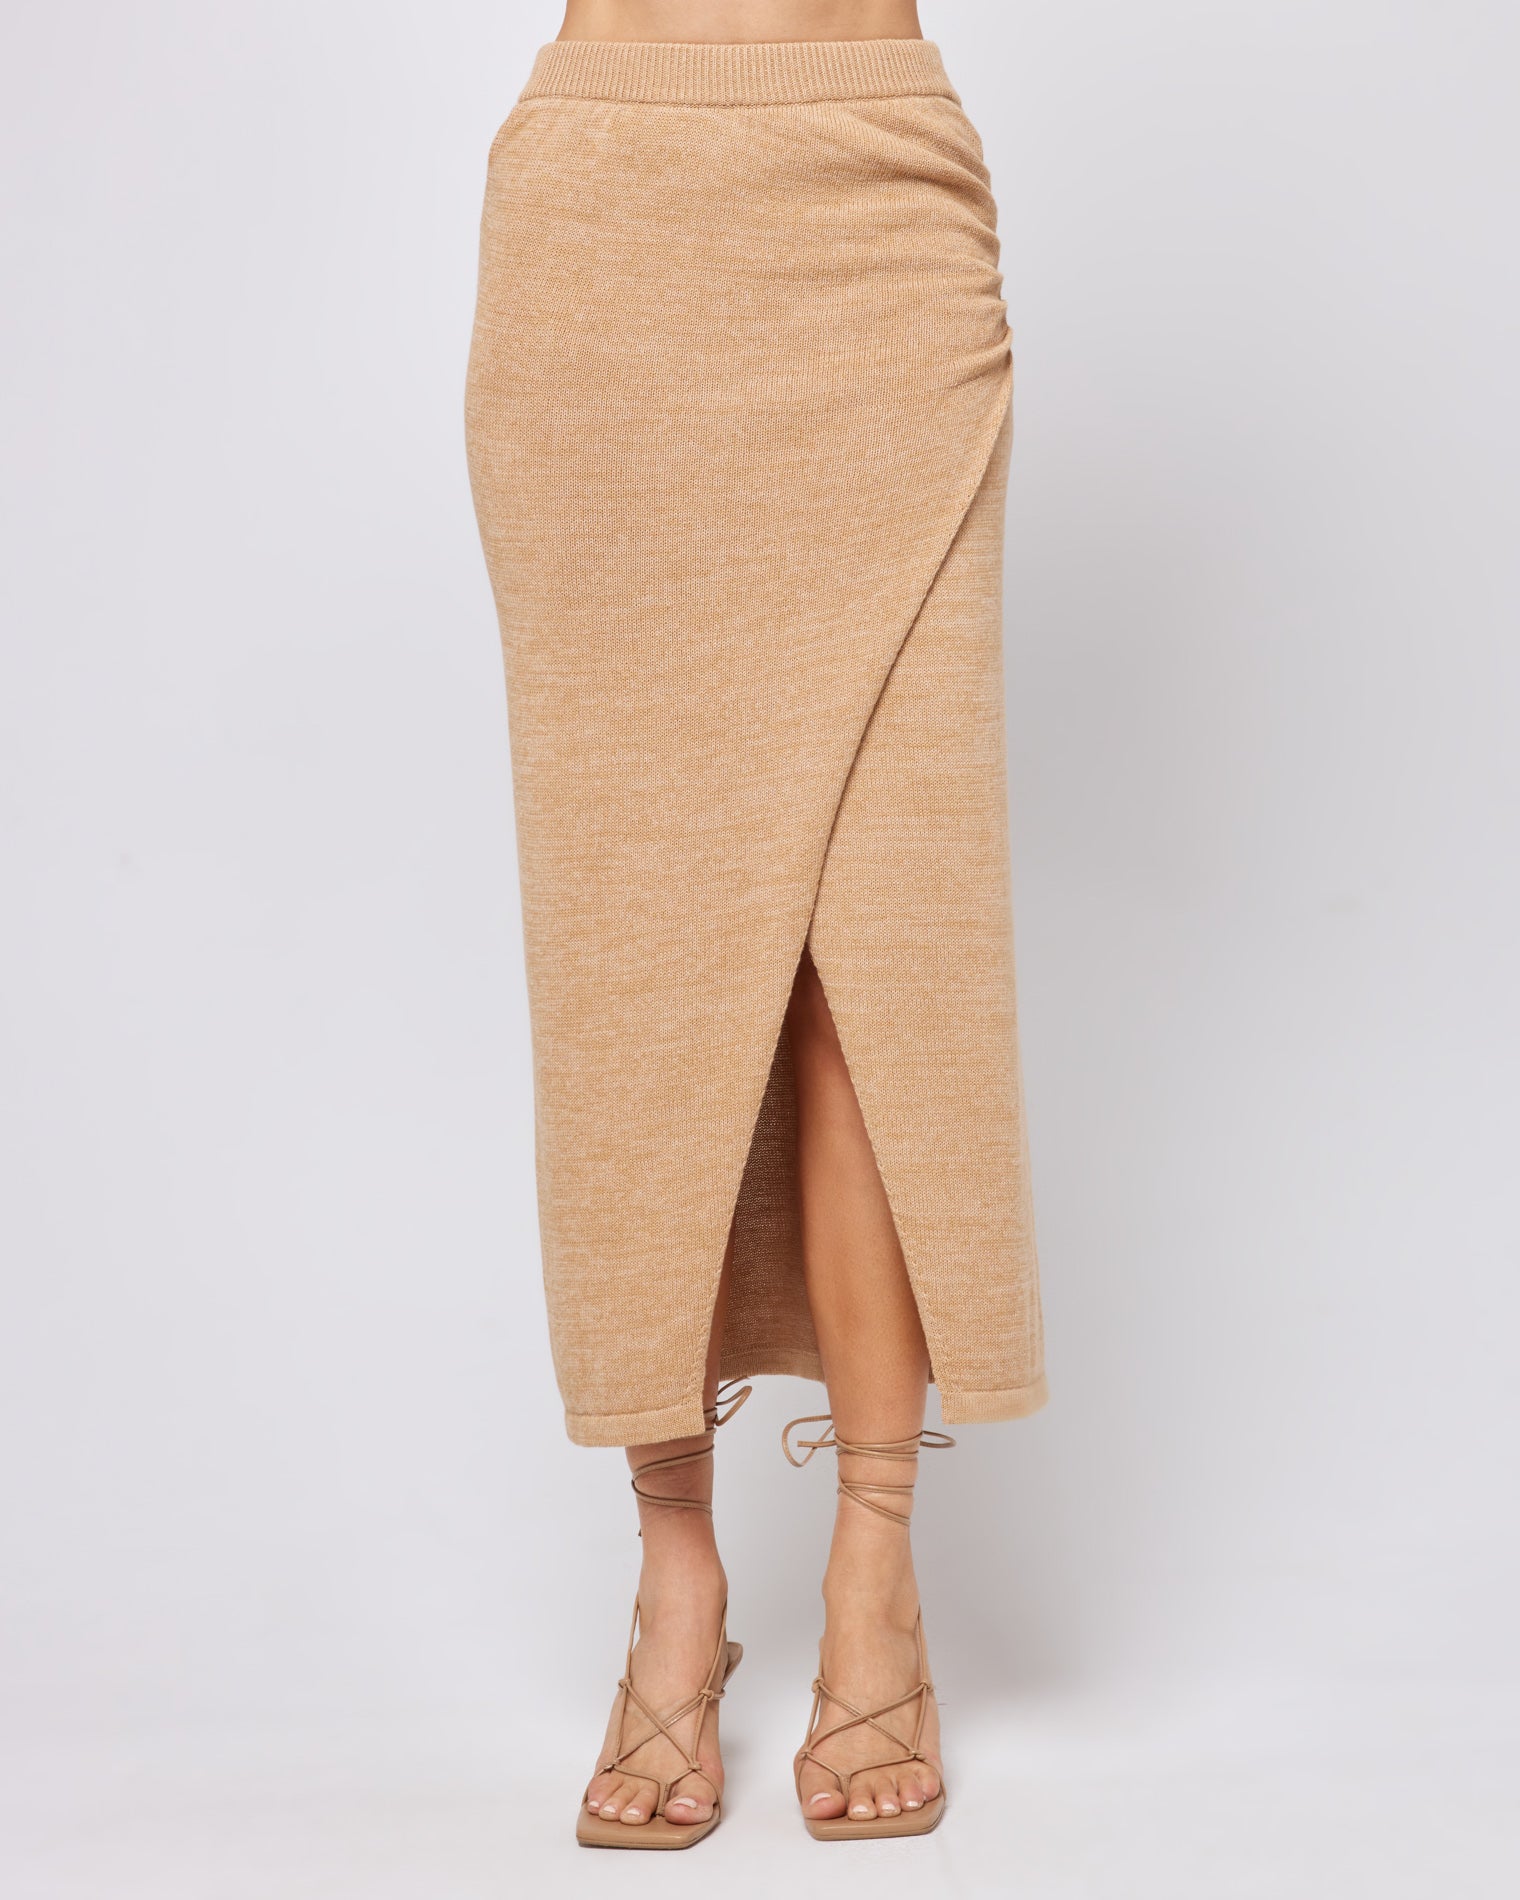 Siren Skirt Camel | Model: Lura (size: S)